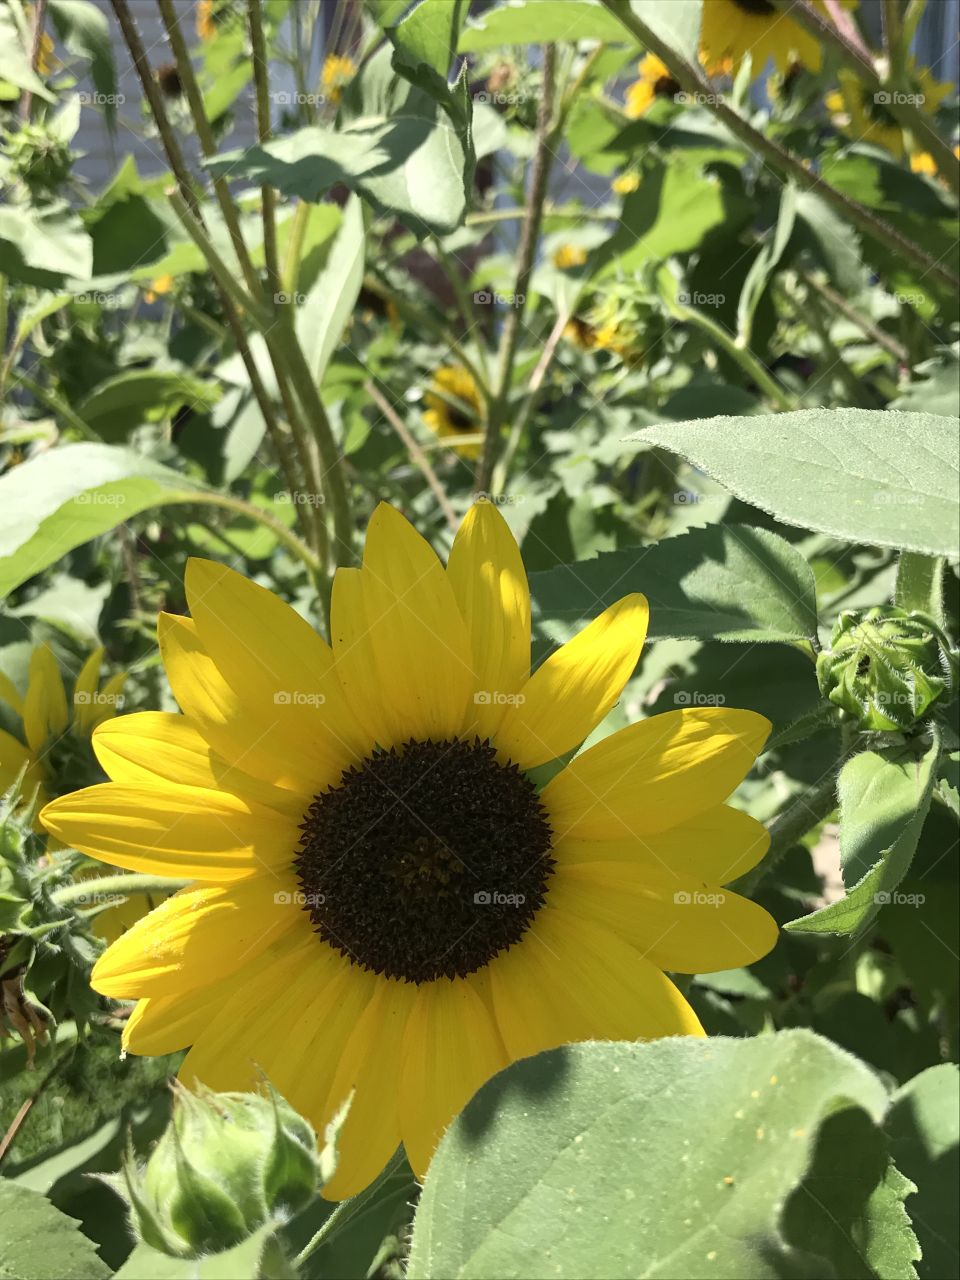 Garden sunflower 